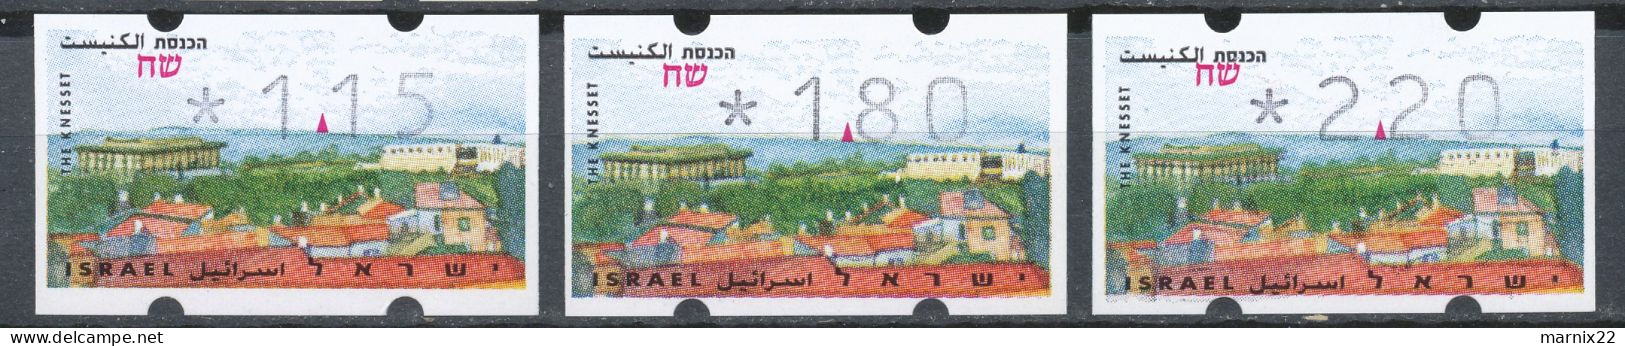 ISRAEL 1995-1998 - FRAMA LABELS - 9 DIFFERENT SETS (30 Labels together)                                            Hk2